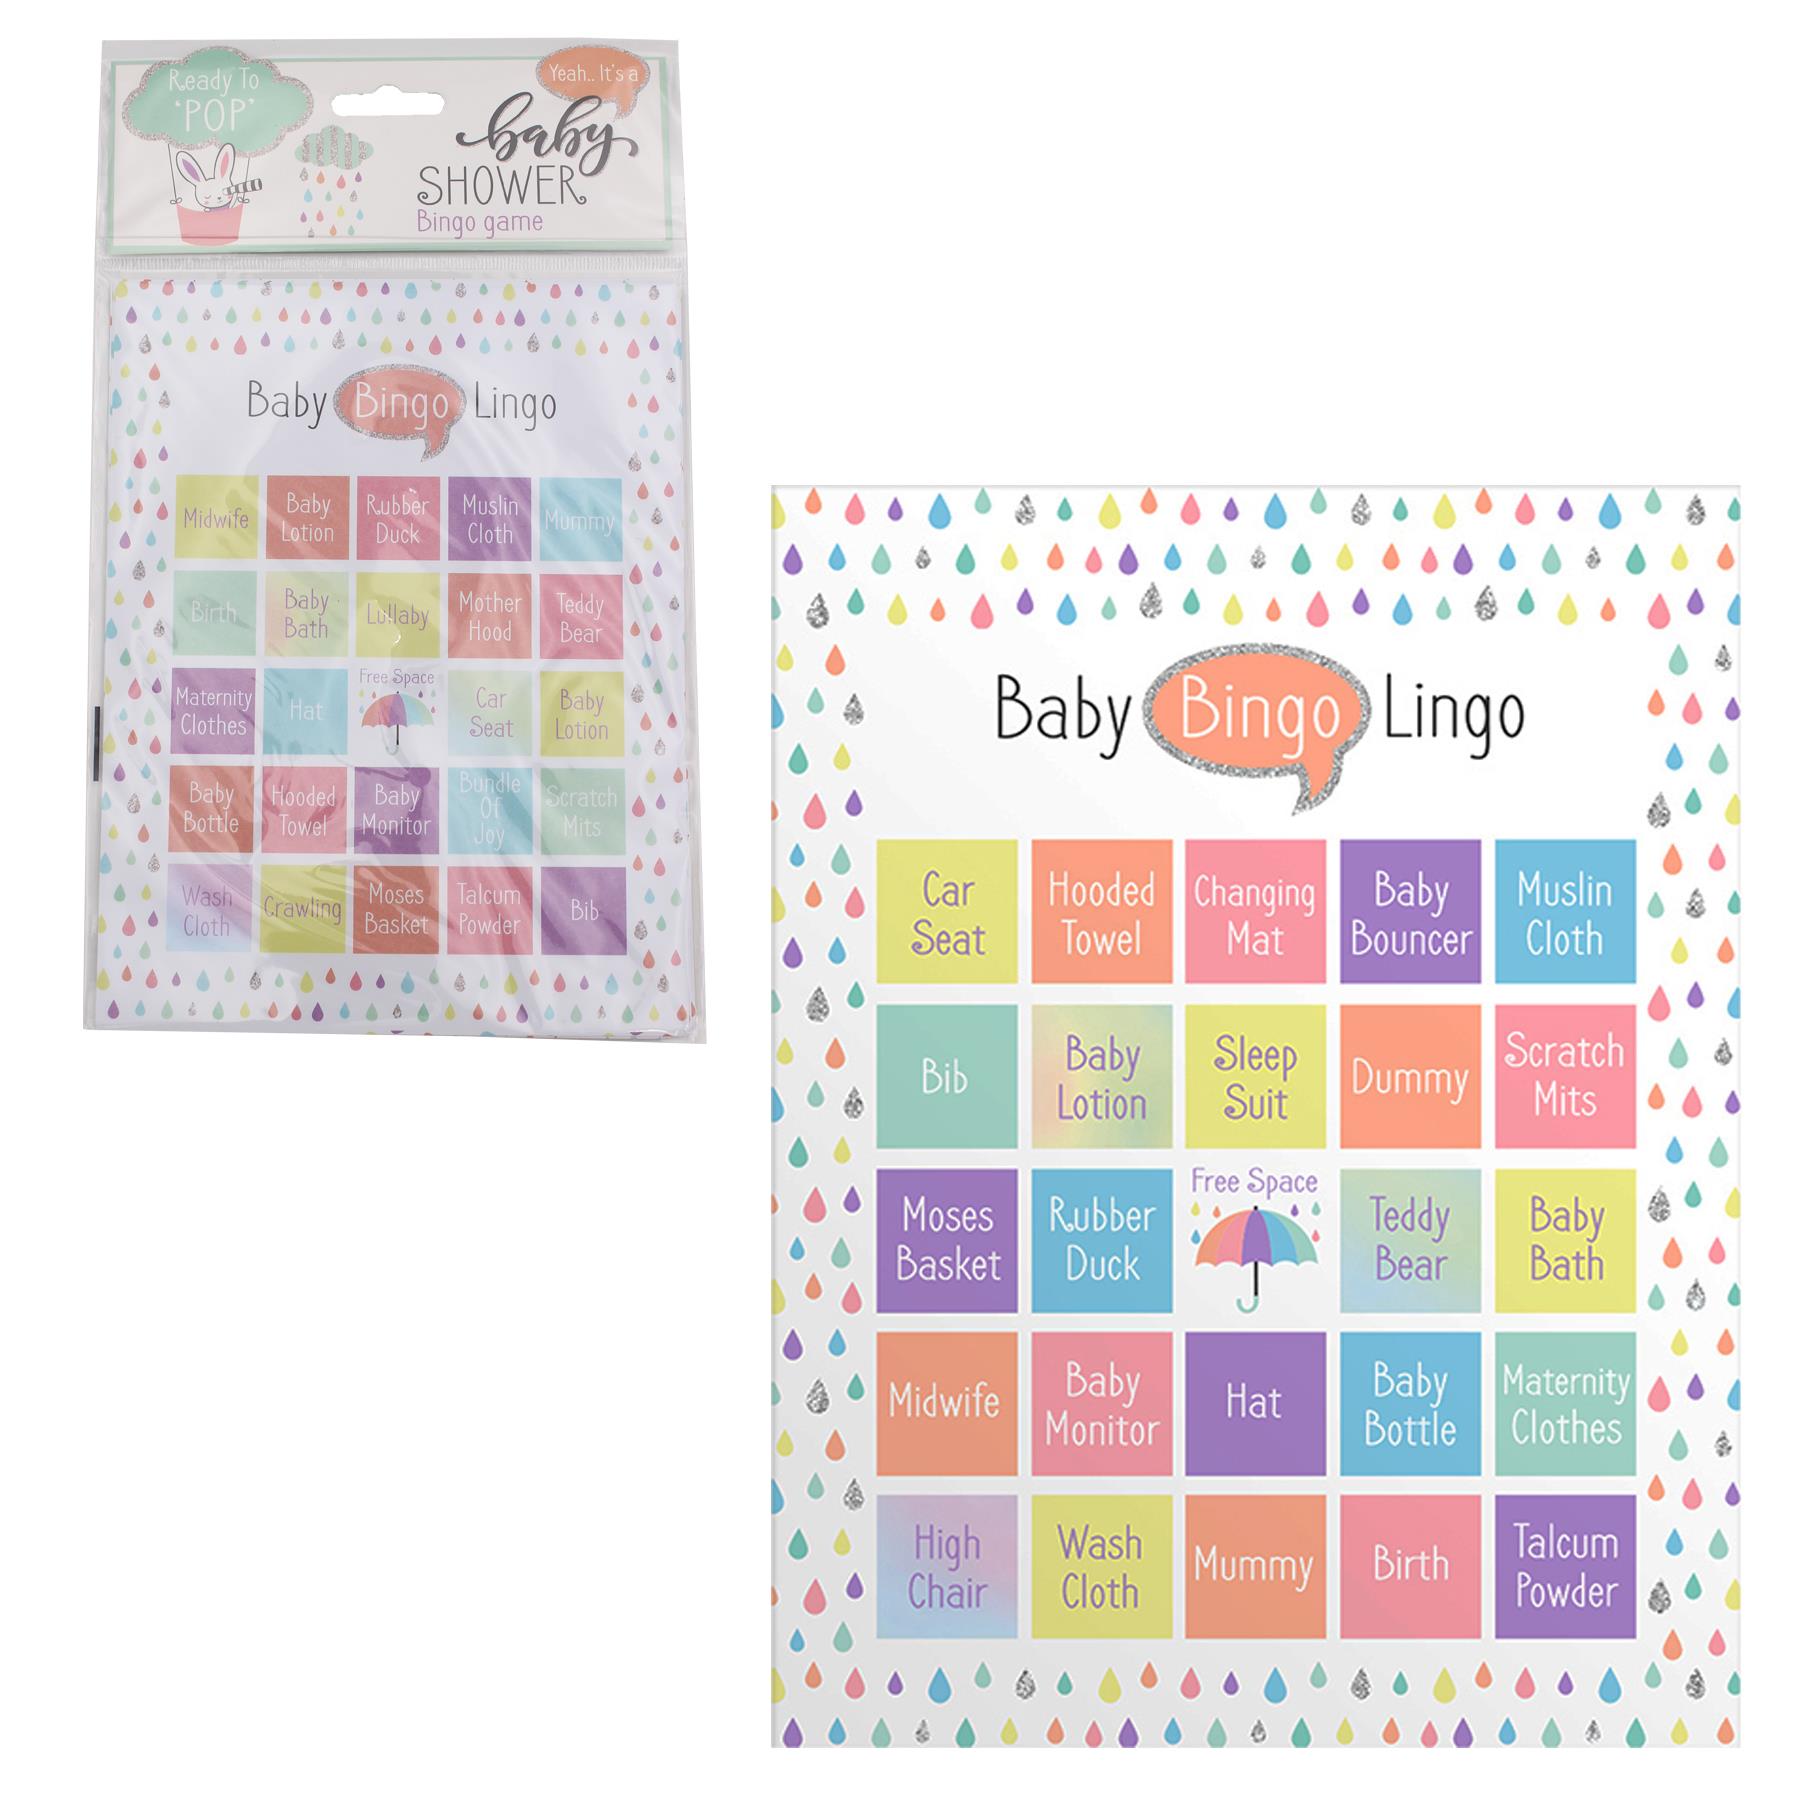 Baby Shower Activities Fun and Games - Bingo Game